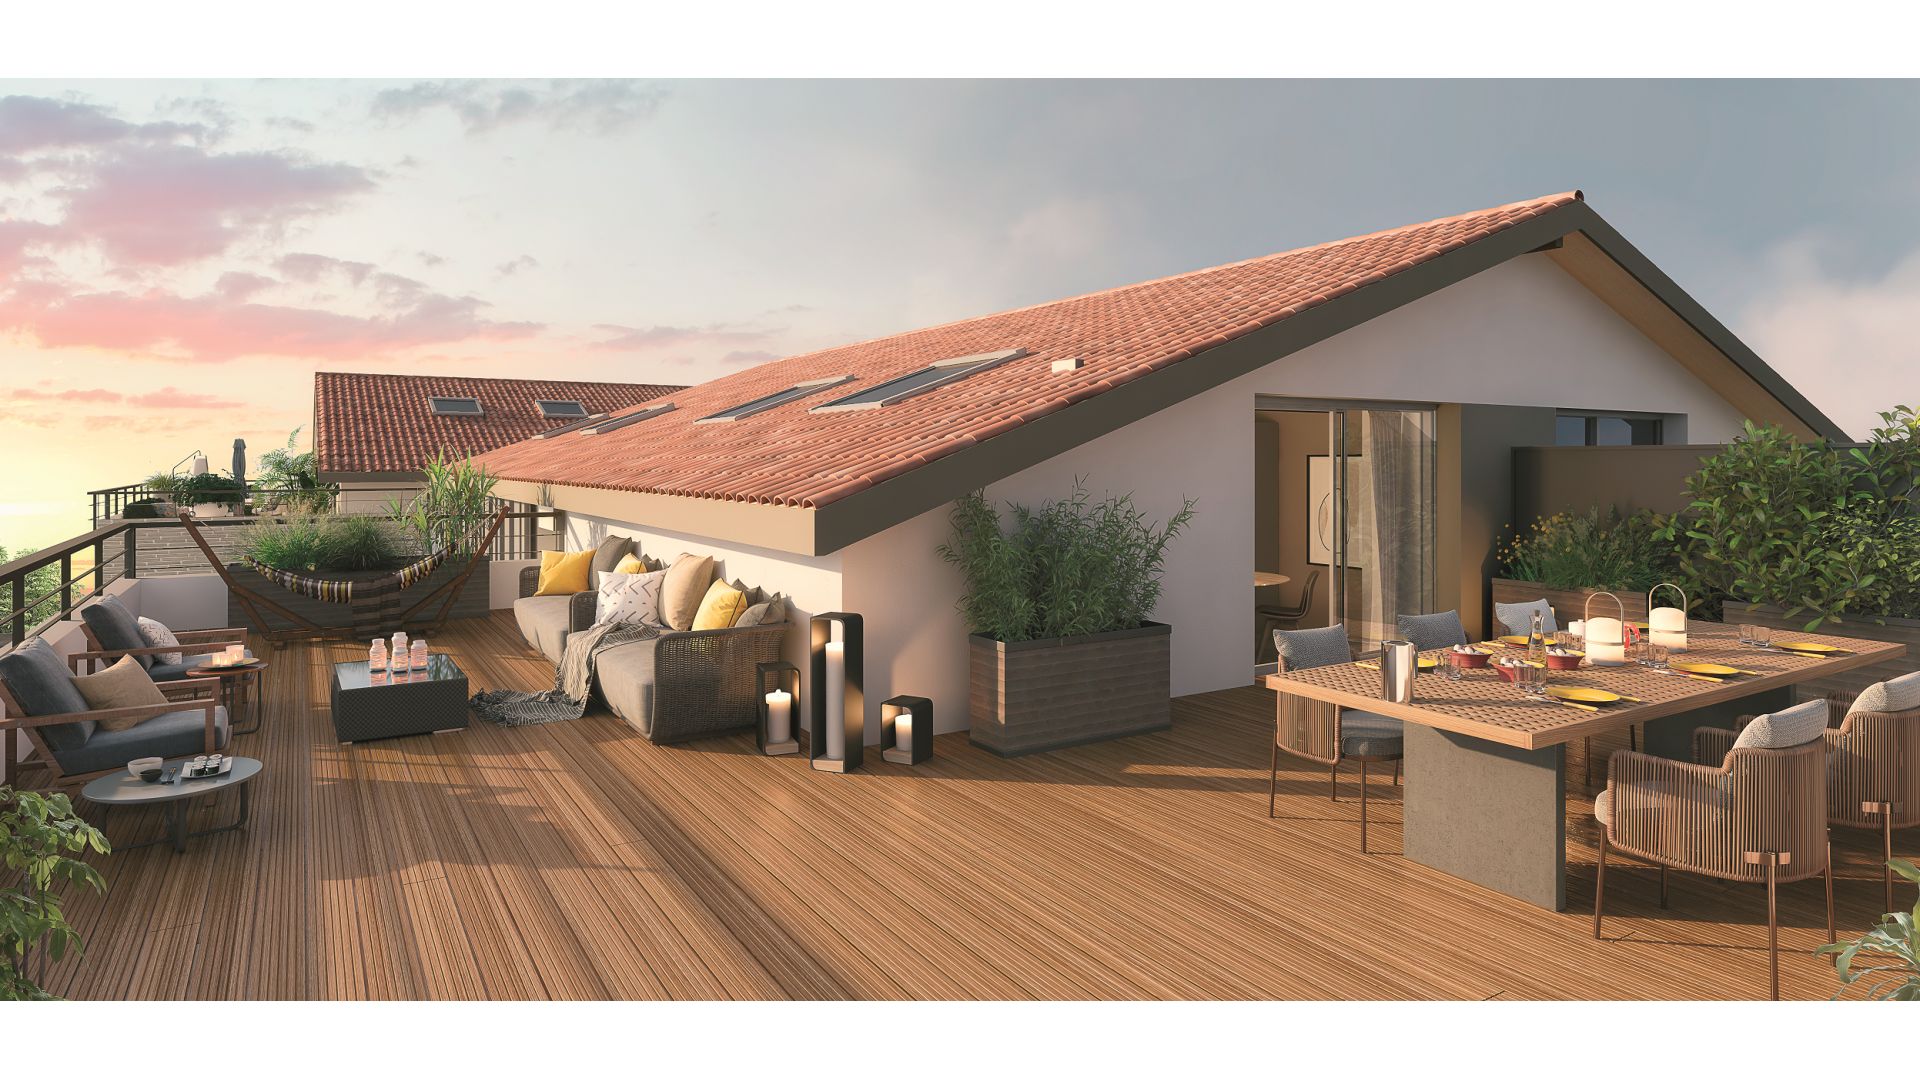 Greencity Immobilier - Résidence Villa Roméo - achat appartements neufs du T2 au T4 duplex - Toulouse - Rangueil - 31400 - vue terrasse